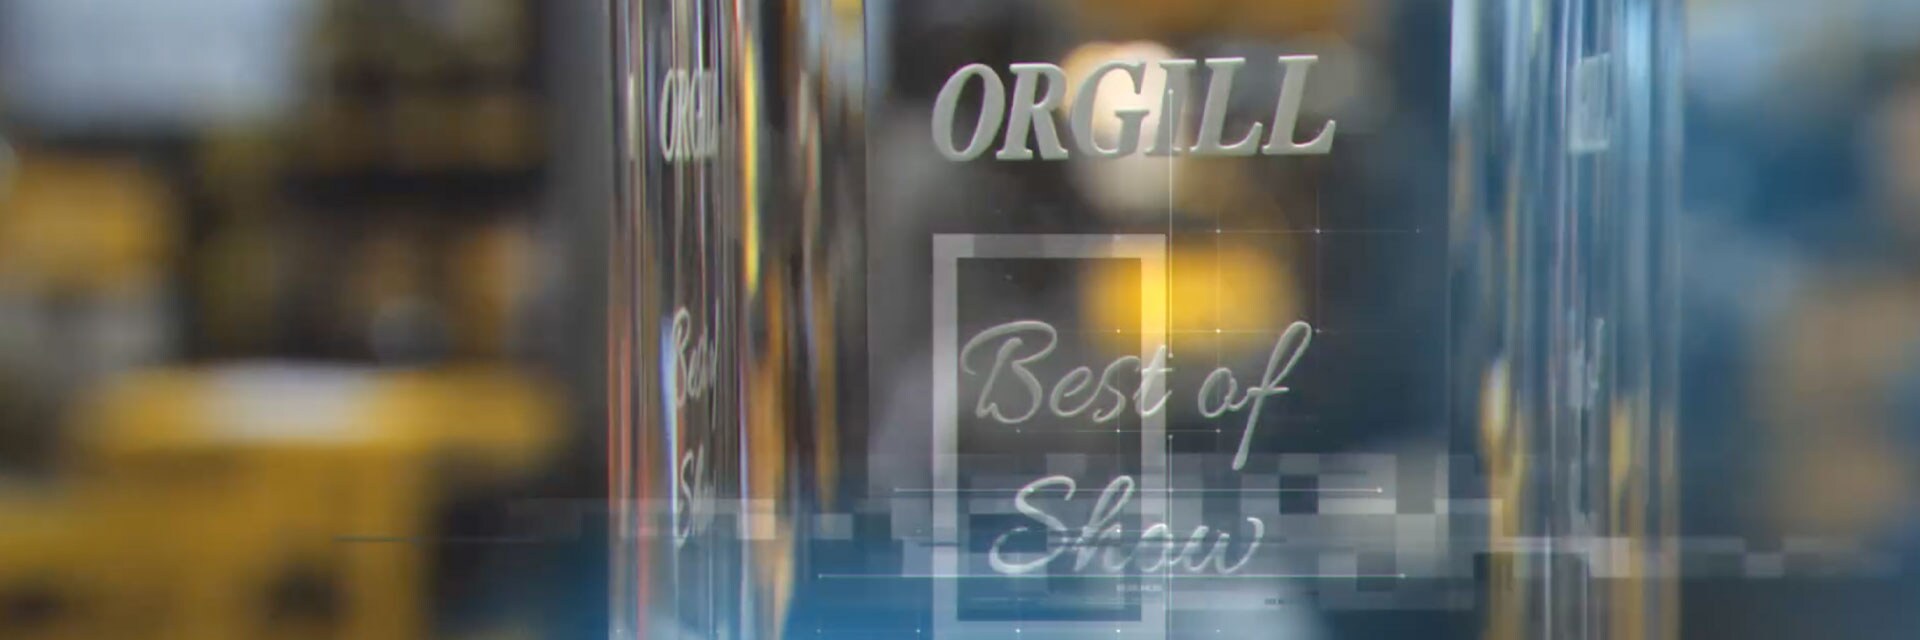 Orgill Best of Show Trophy